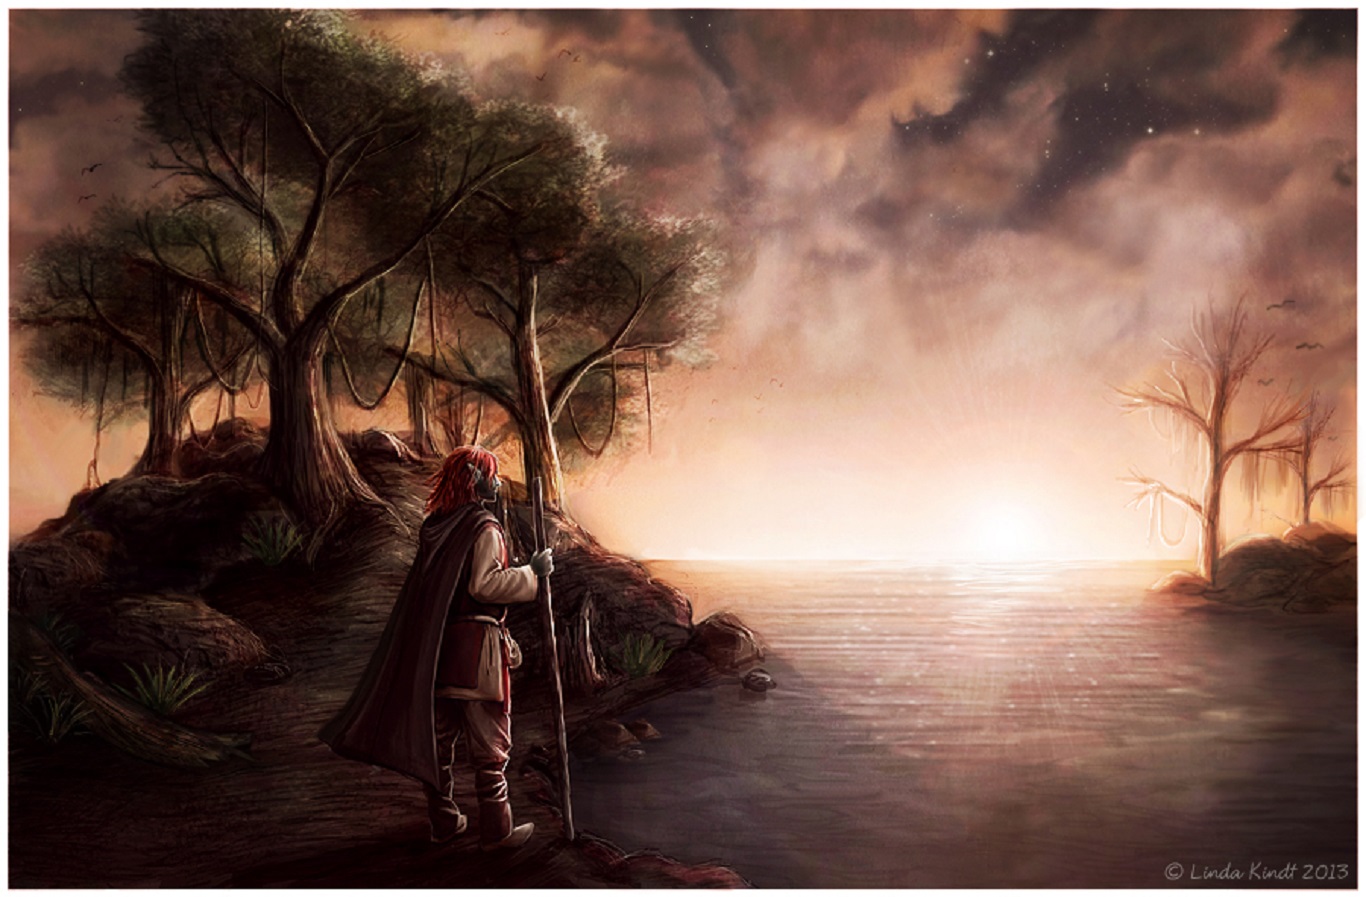 The Elder Scrolls III: Morrowind Picture